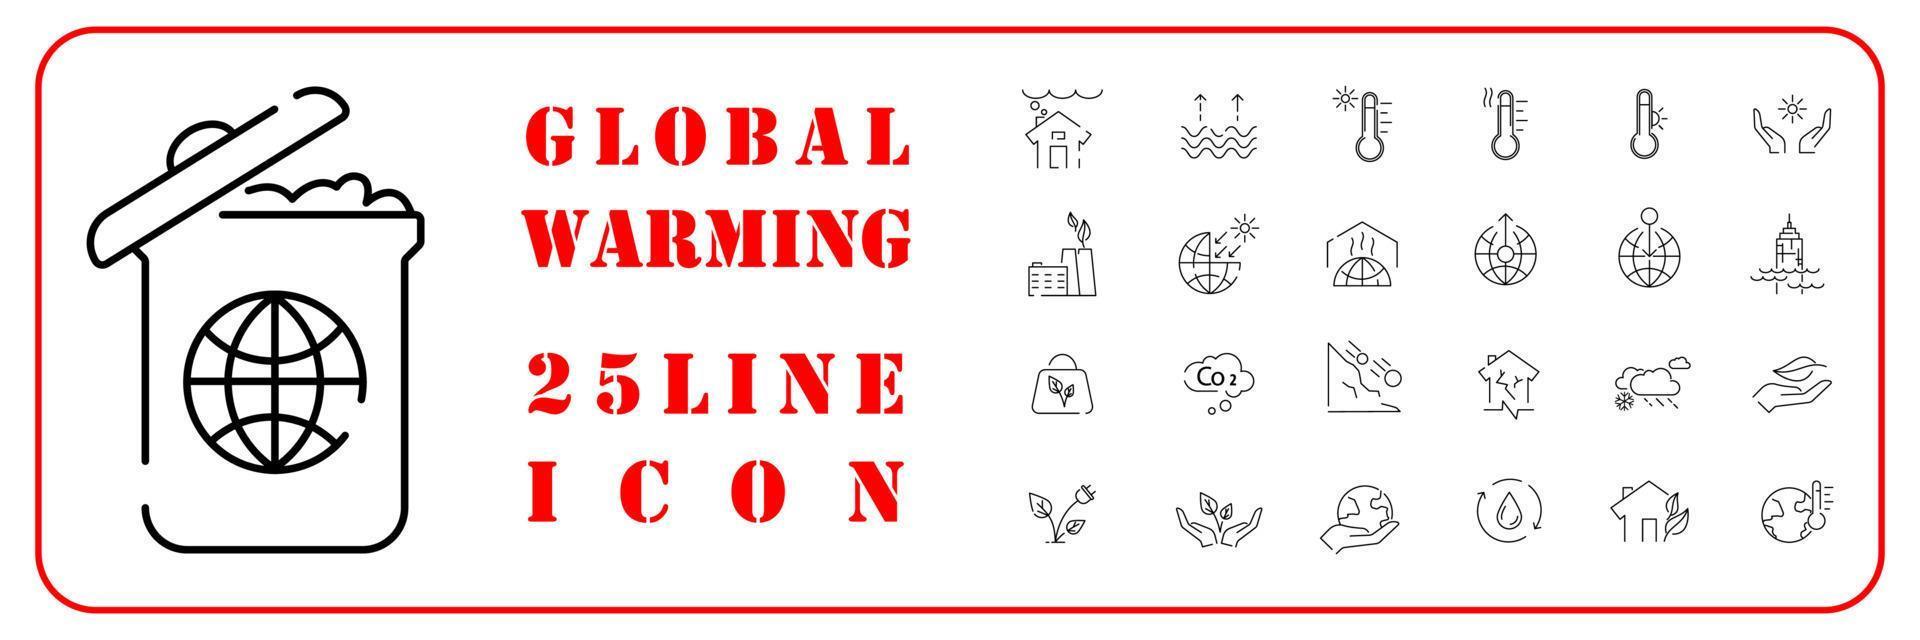 global uppvärmning, katastrof, katastrof ikon uppsättning i tunn linje stil. vektor värld varning ikoner.